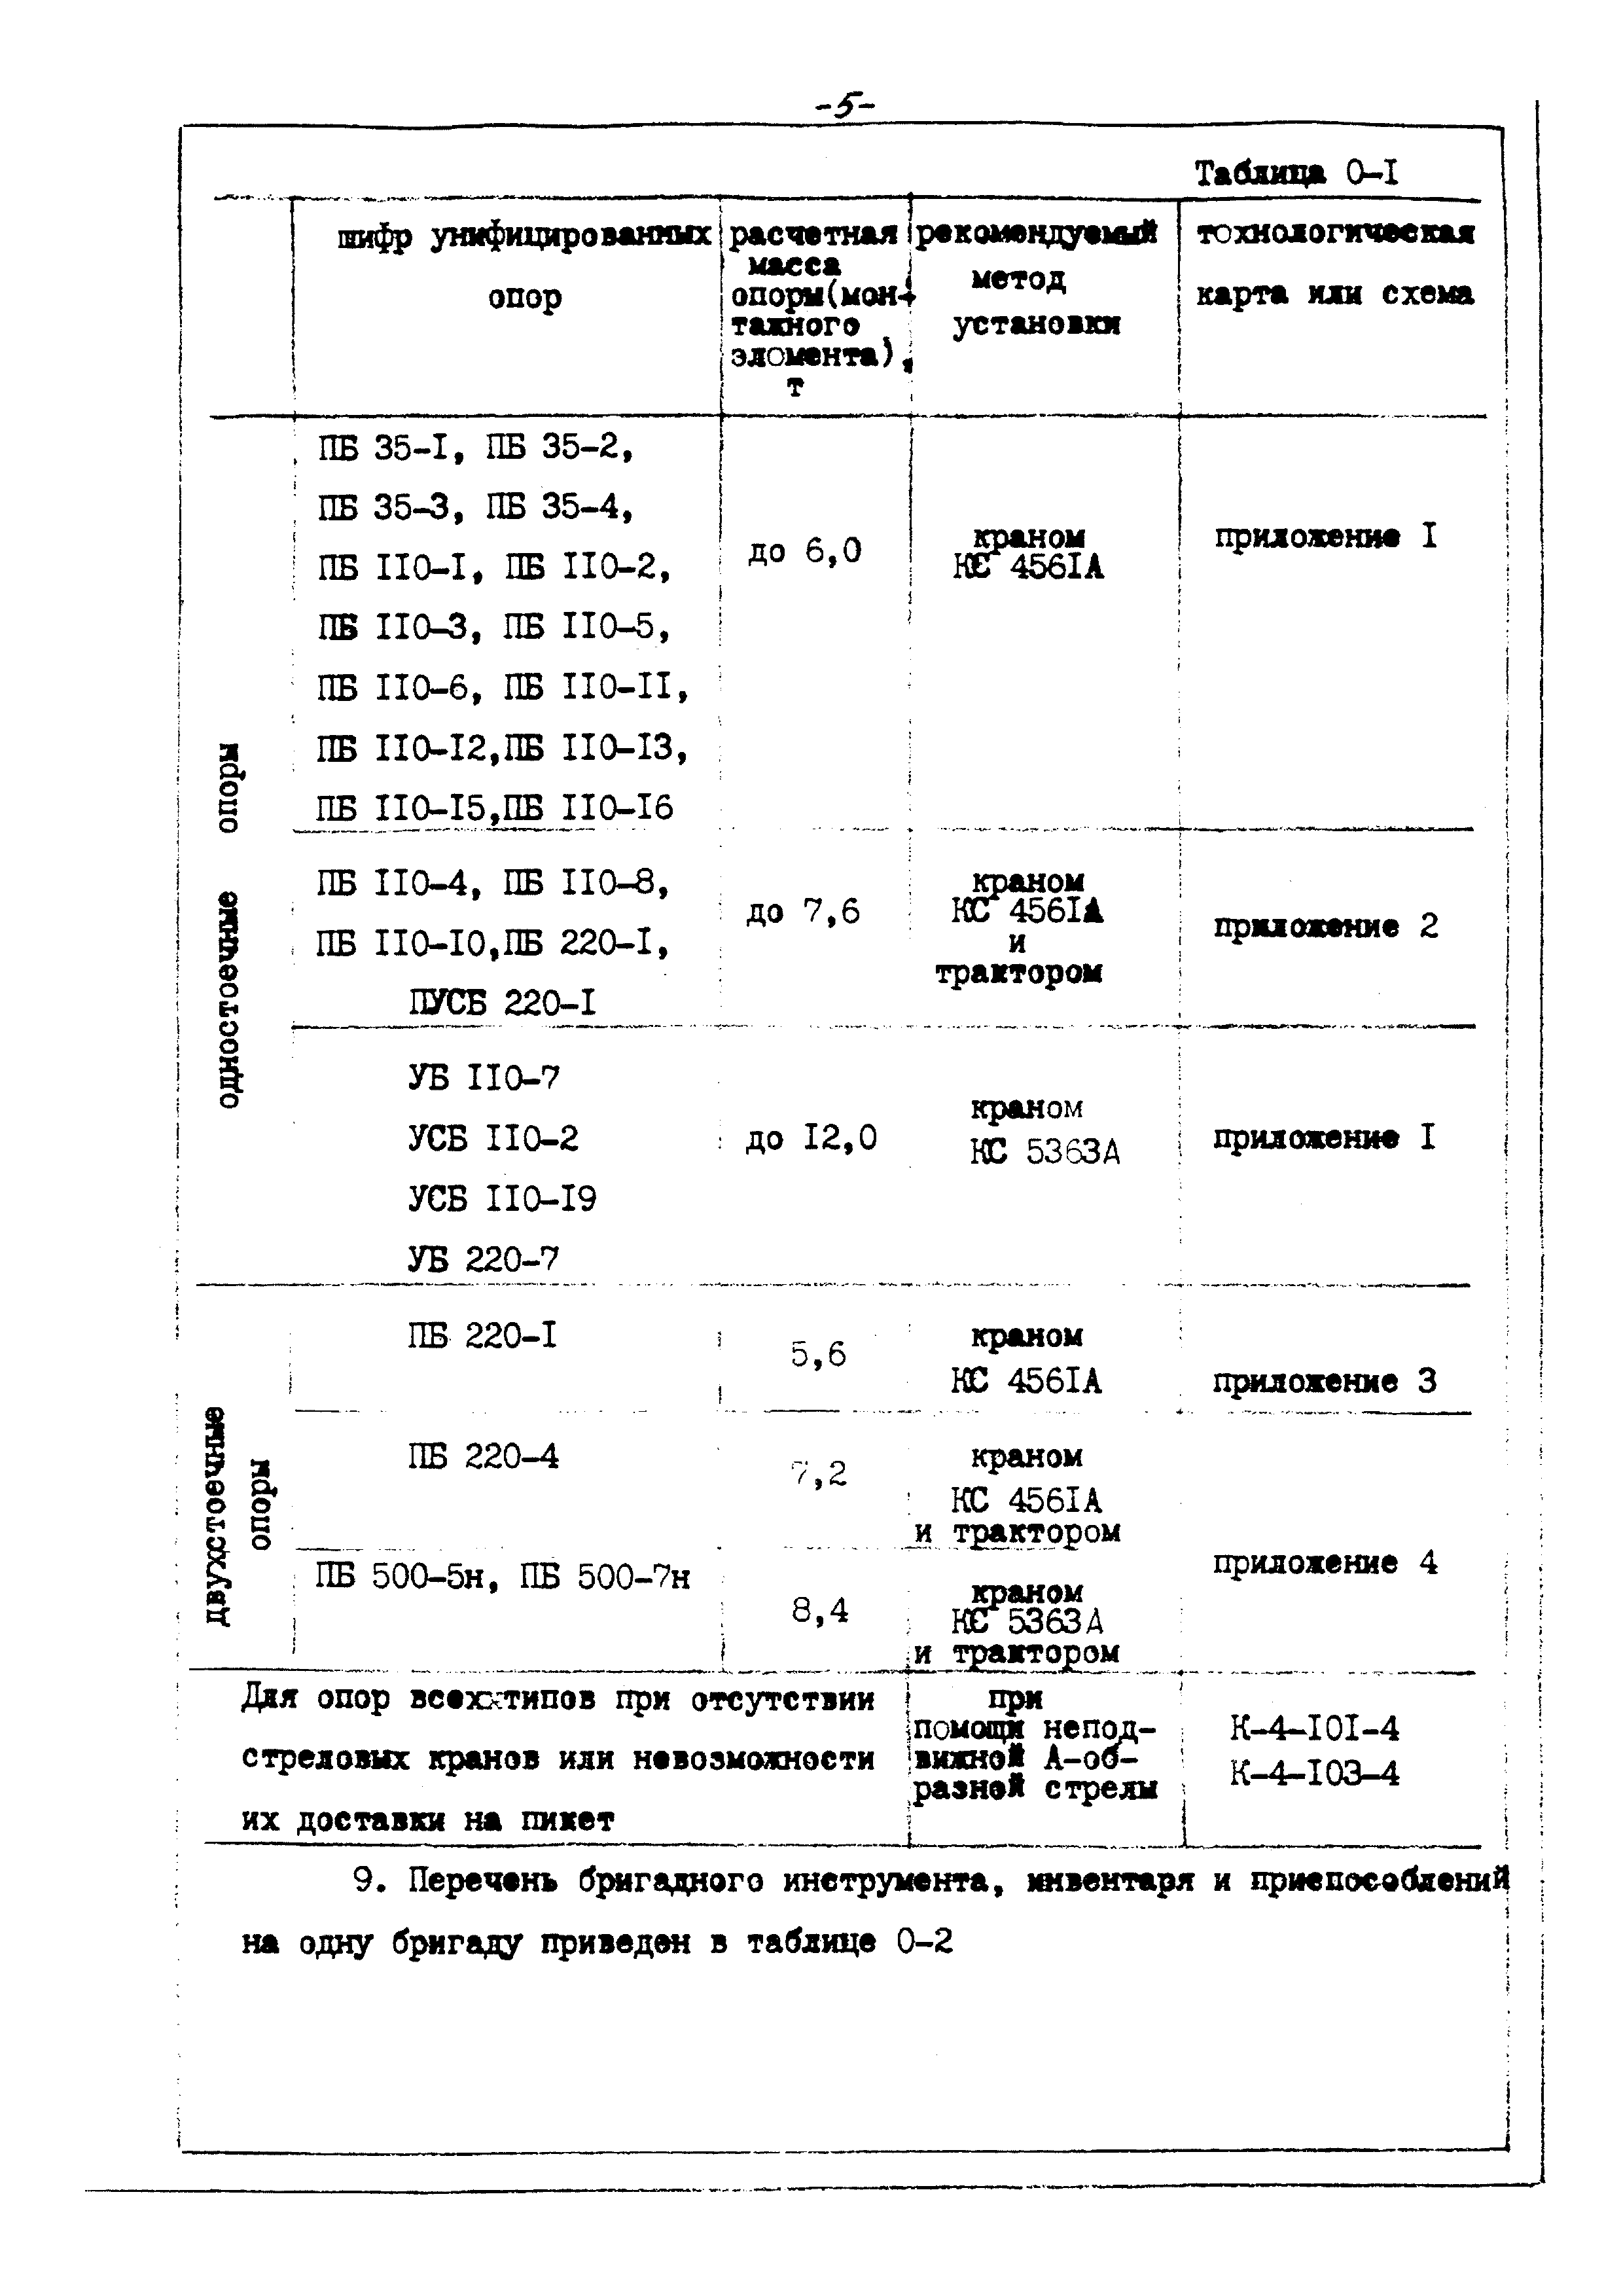 ТТК К-4-104-2